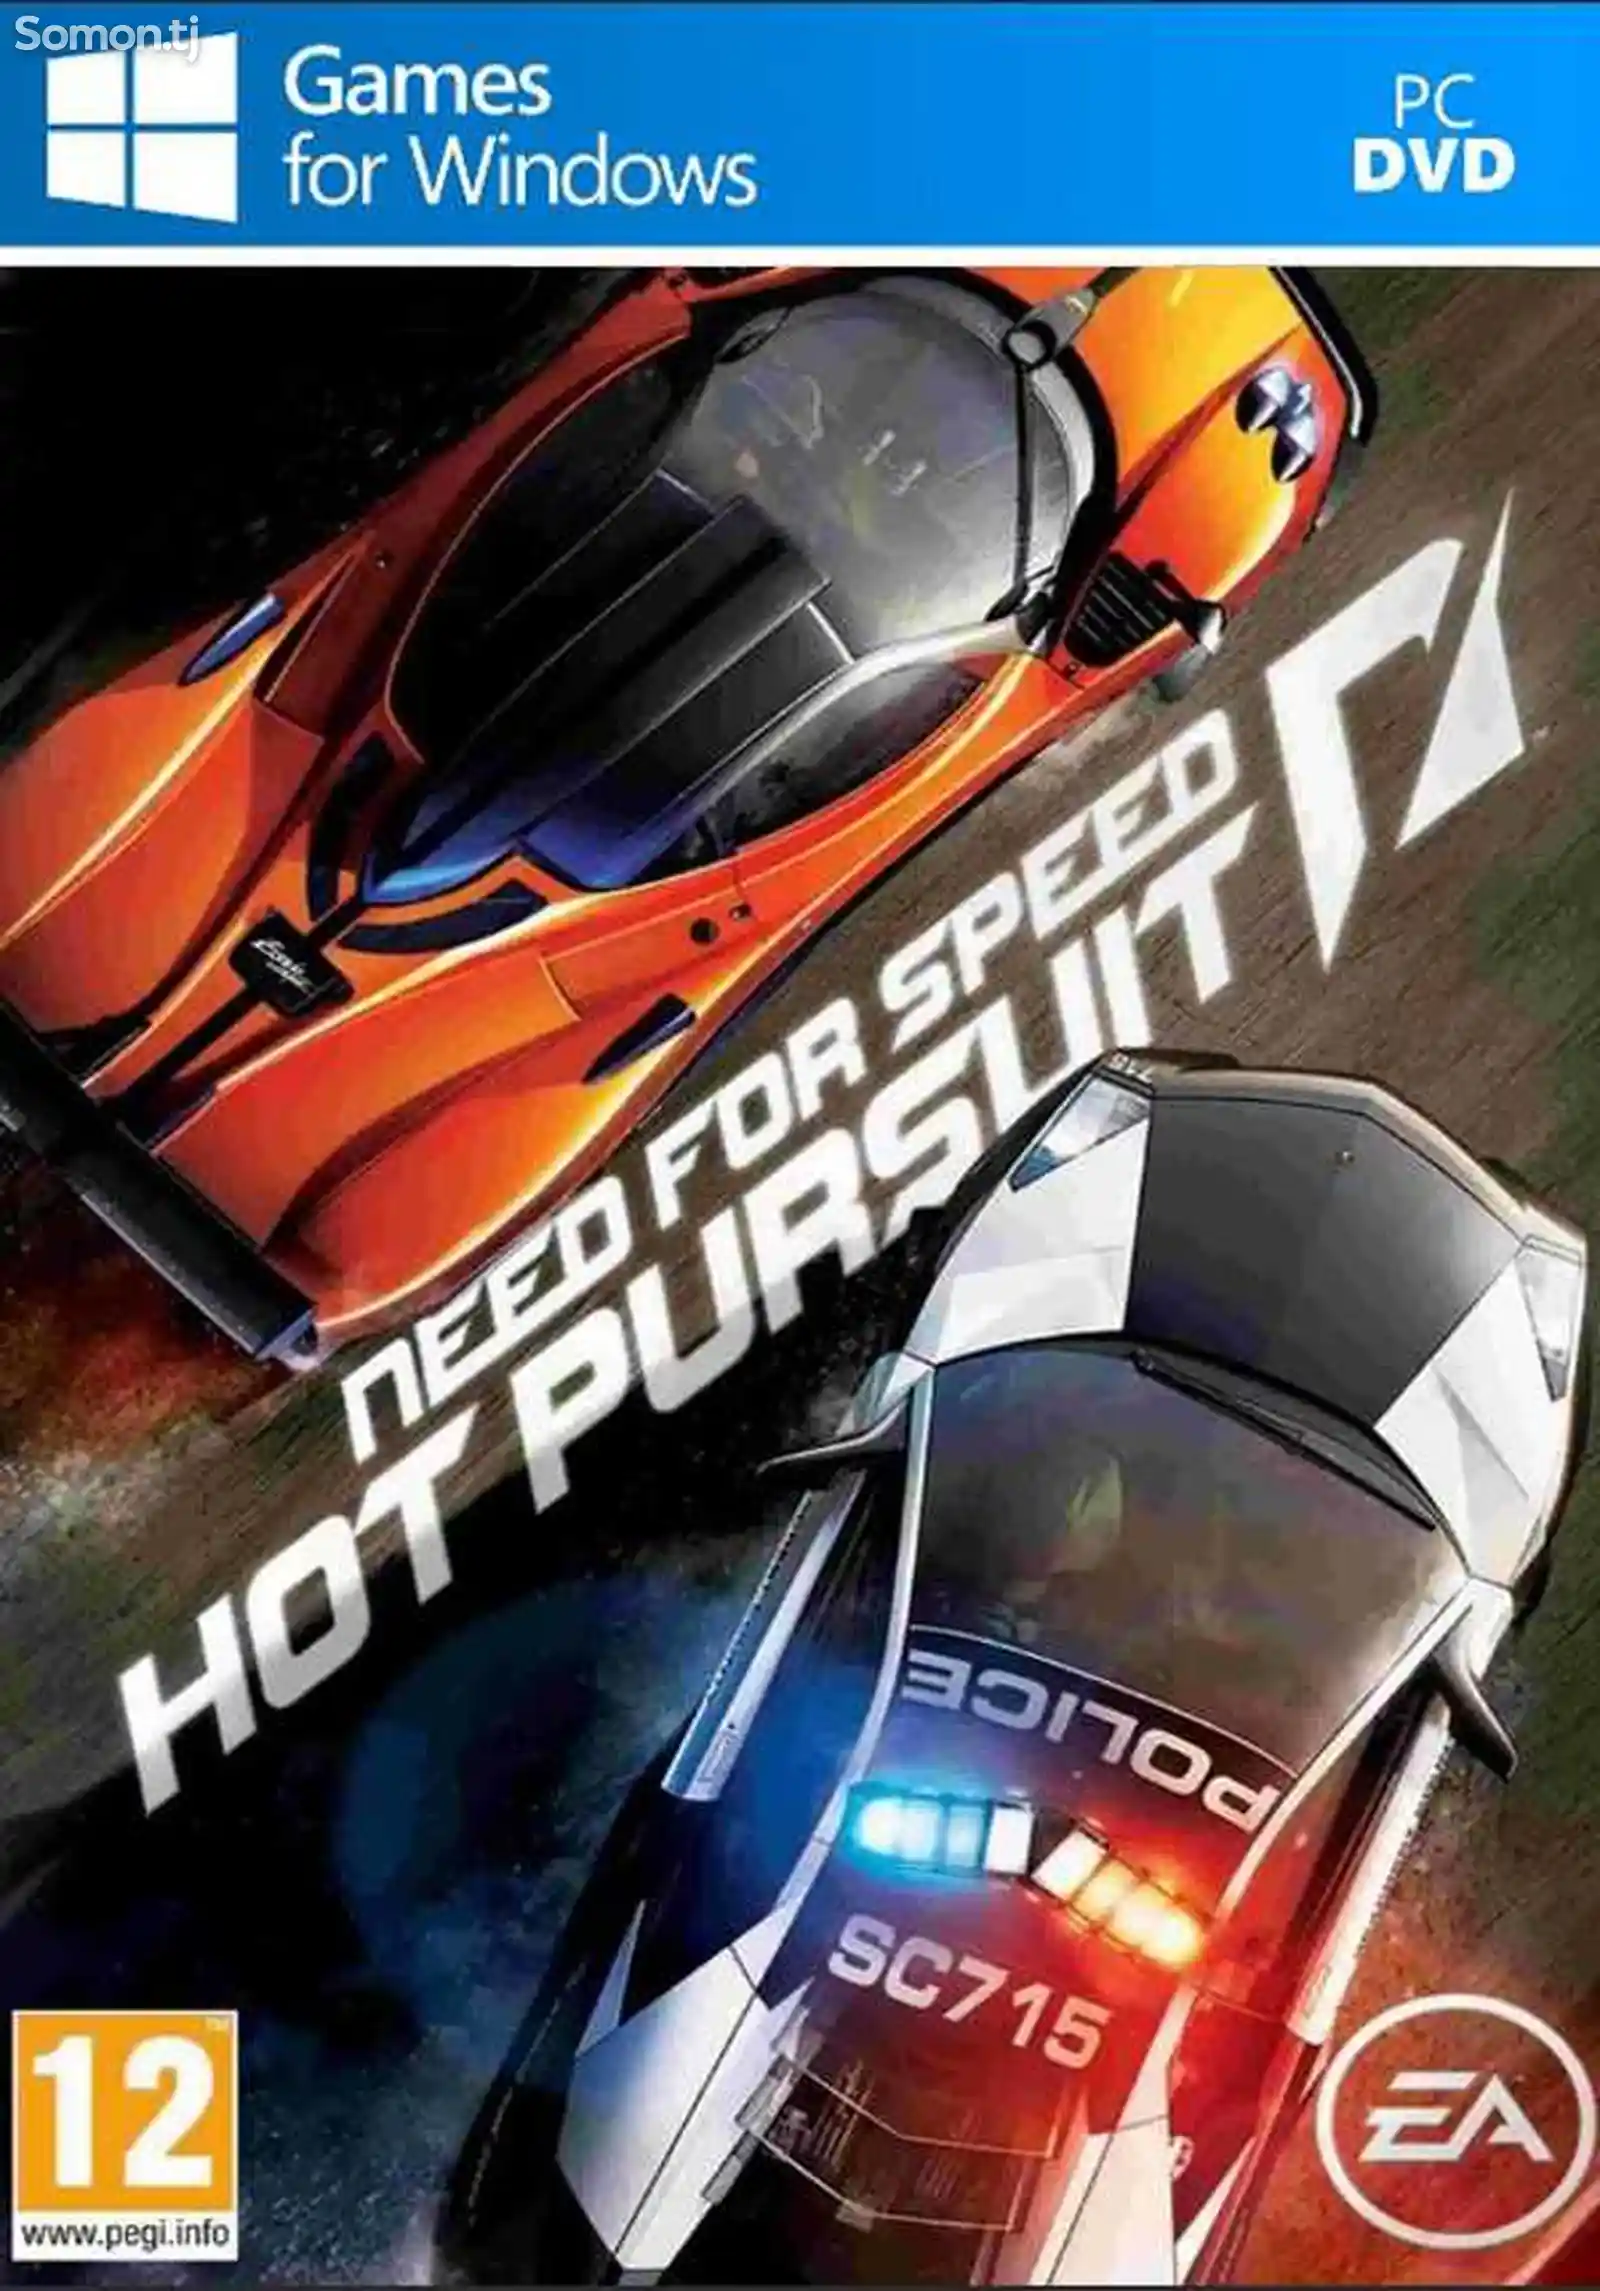 Игра NFS Hot pursuit для компьютера-пк-pc-1